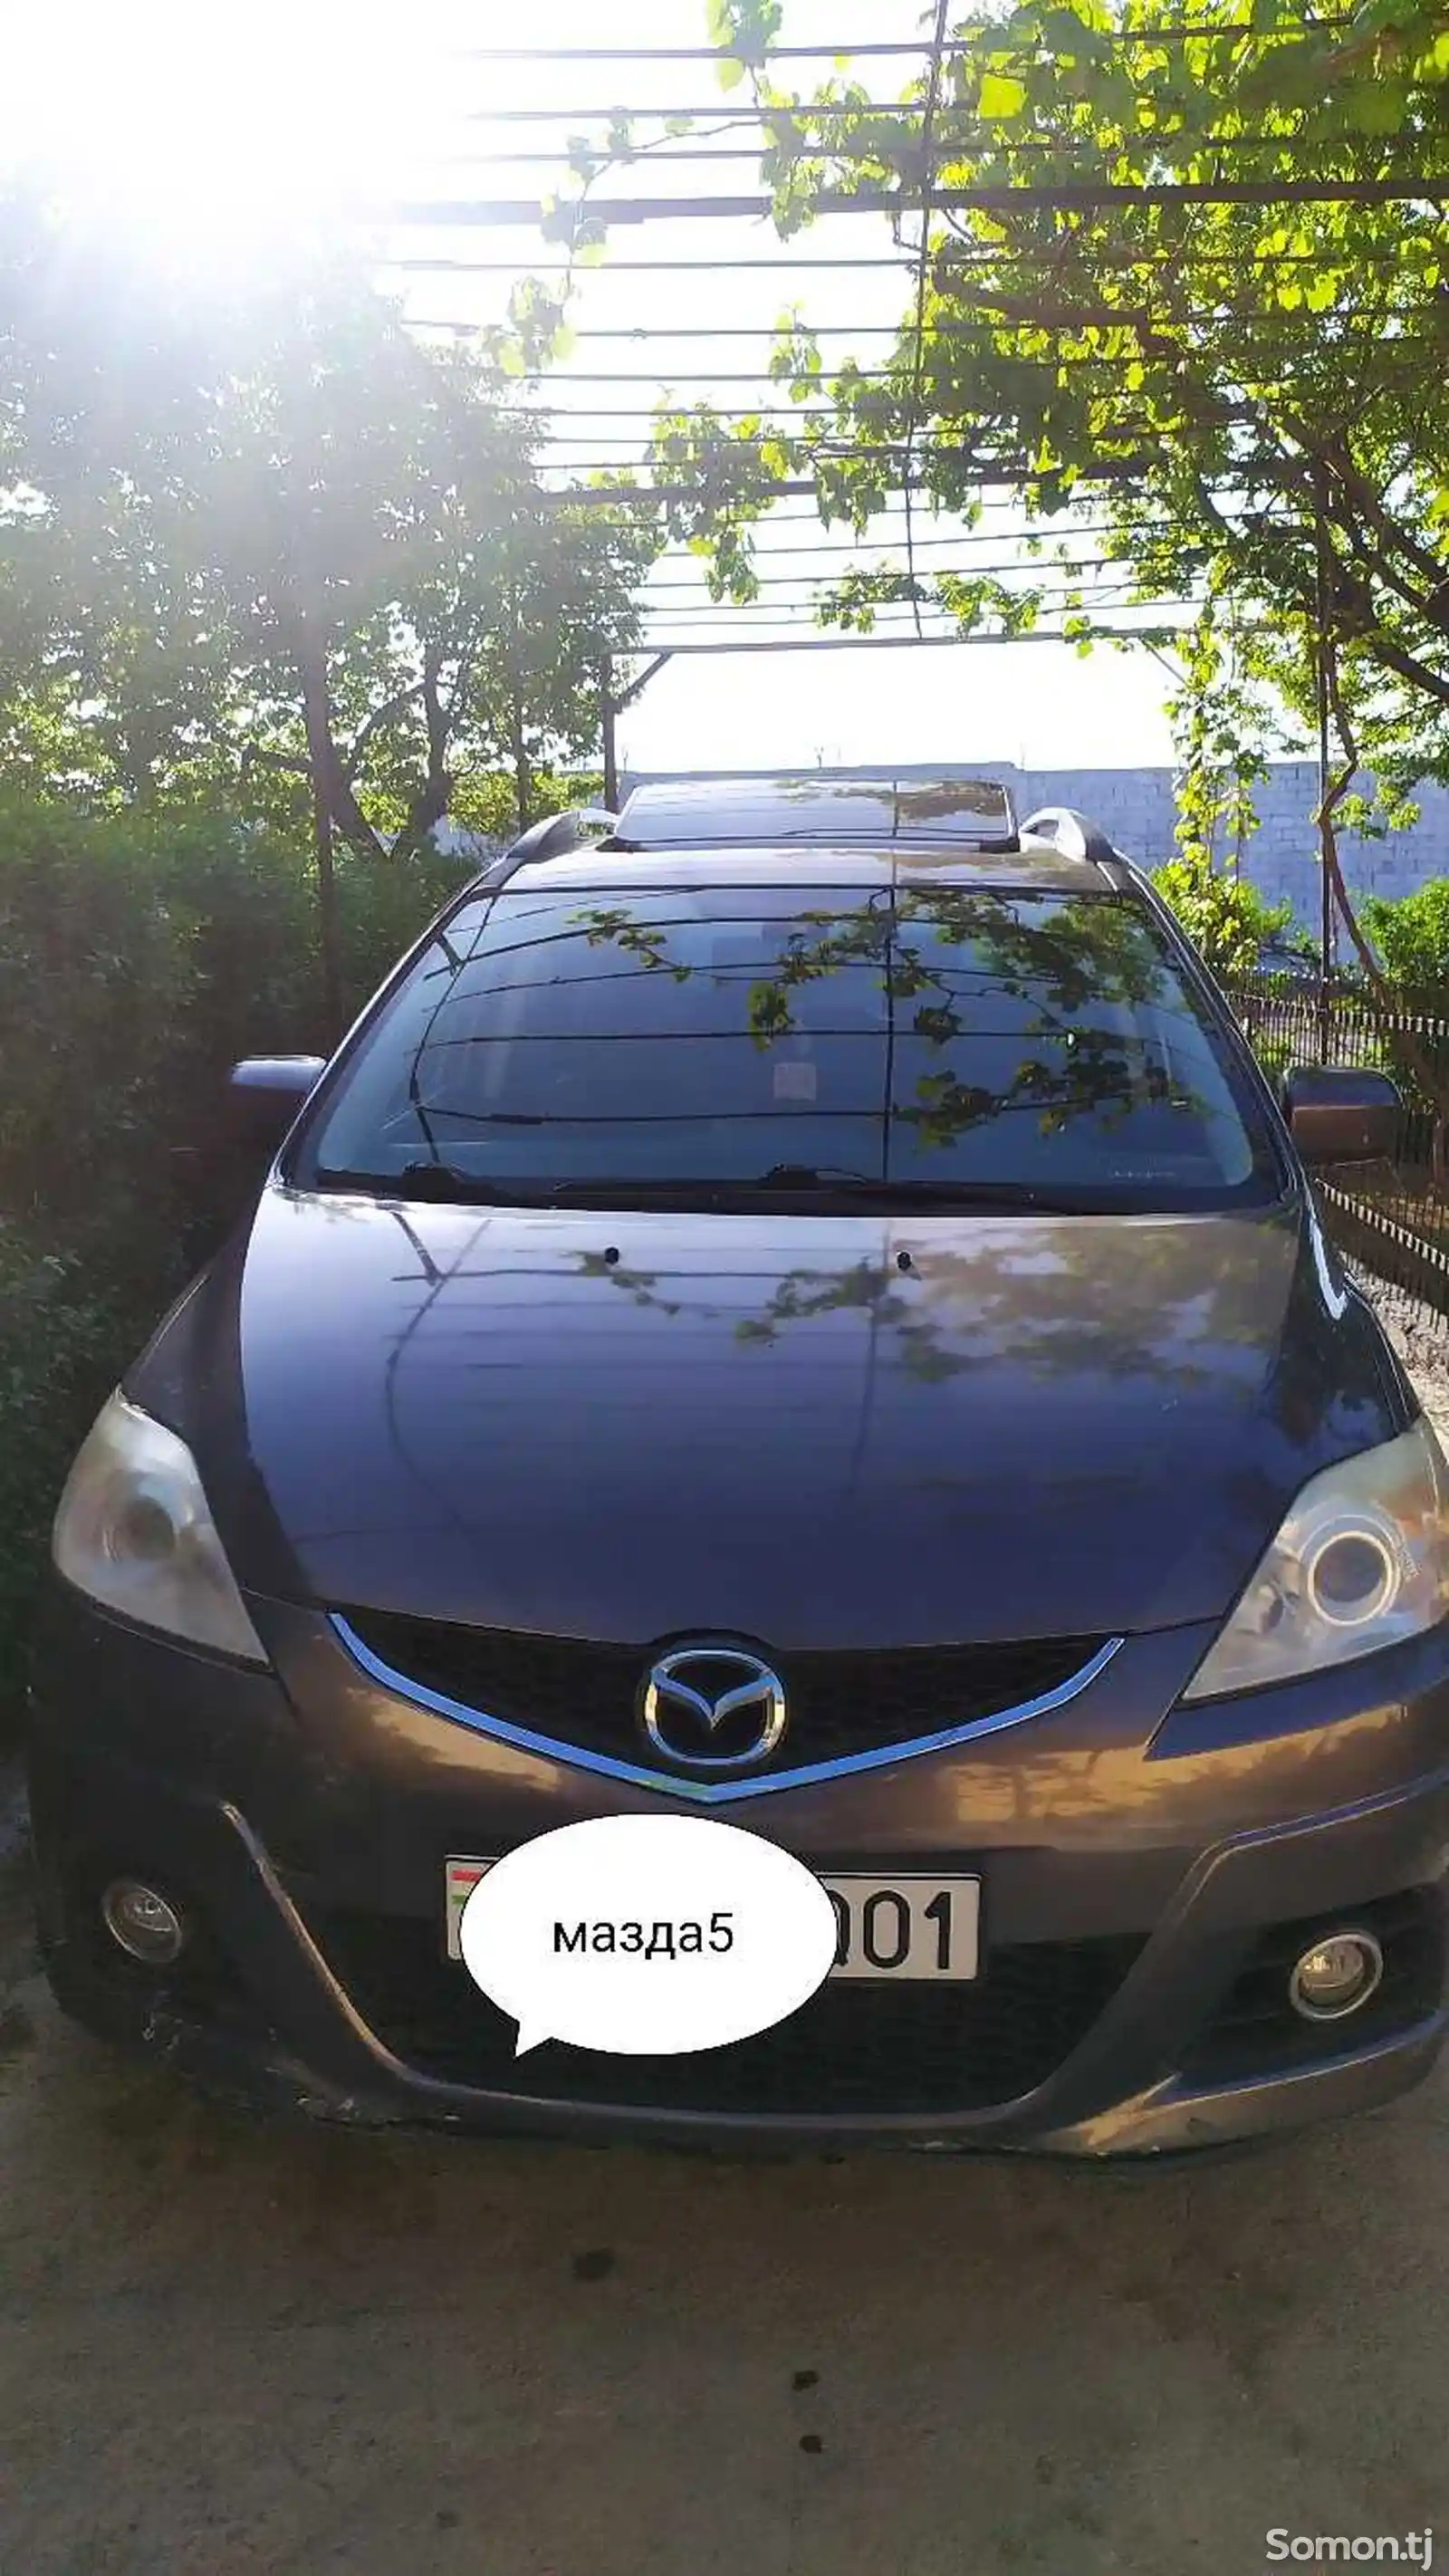 Mazda 5, 2009-14